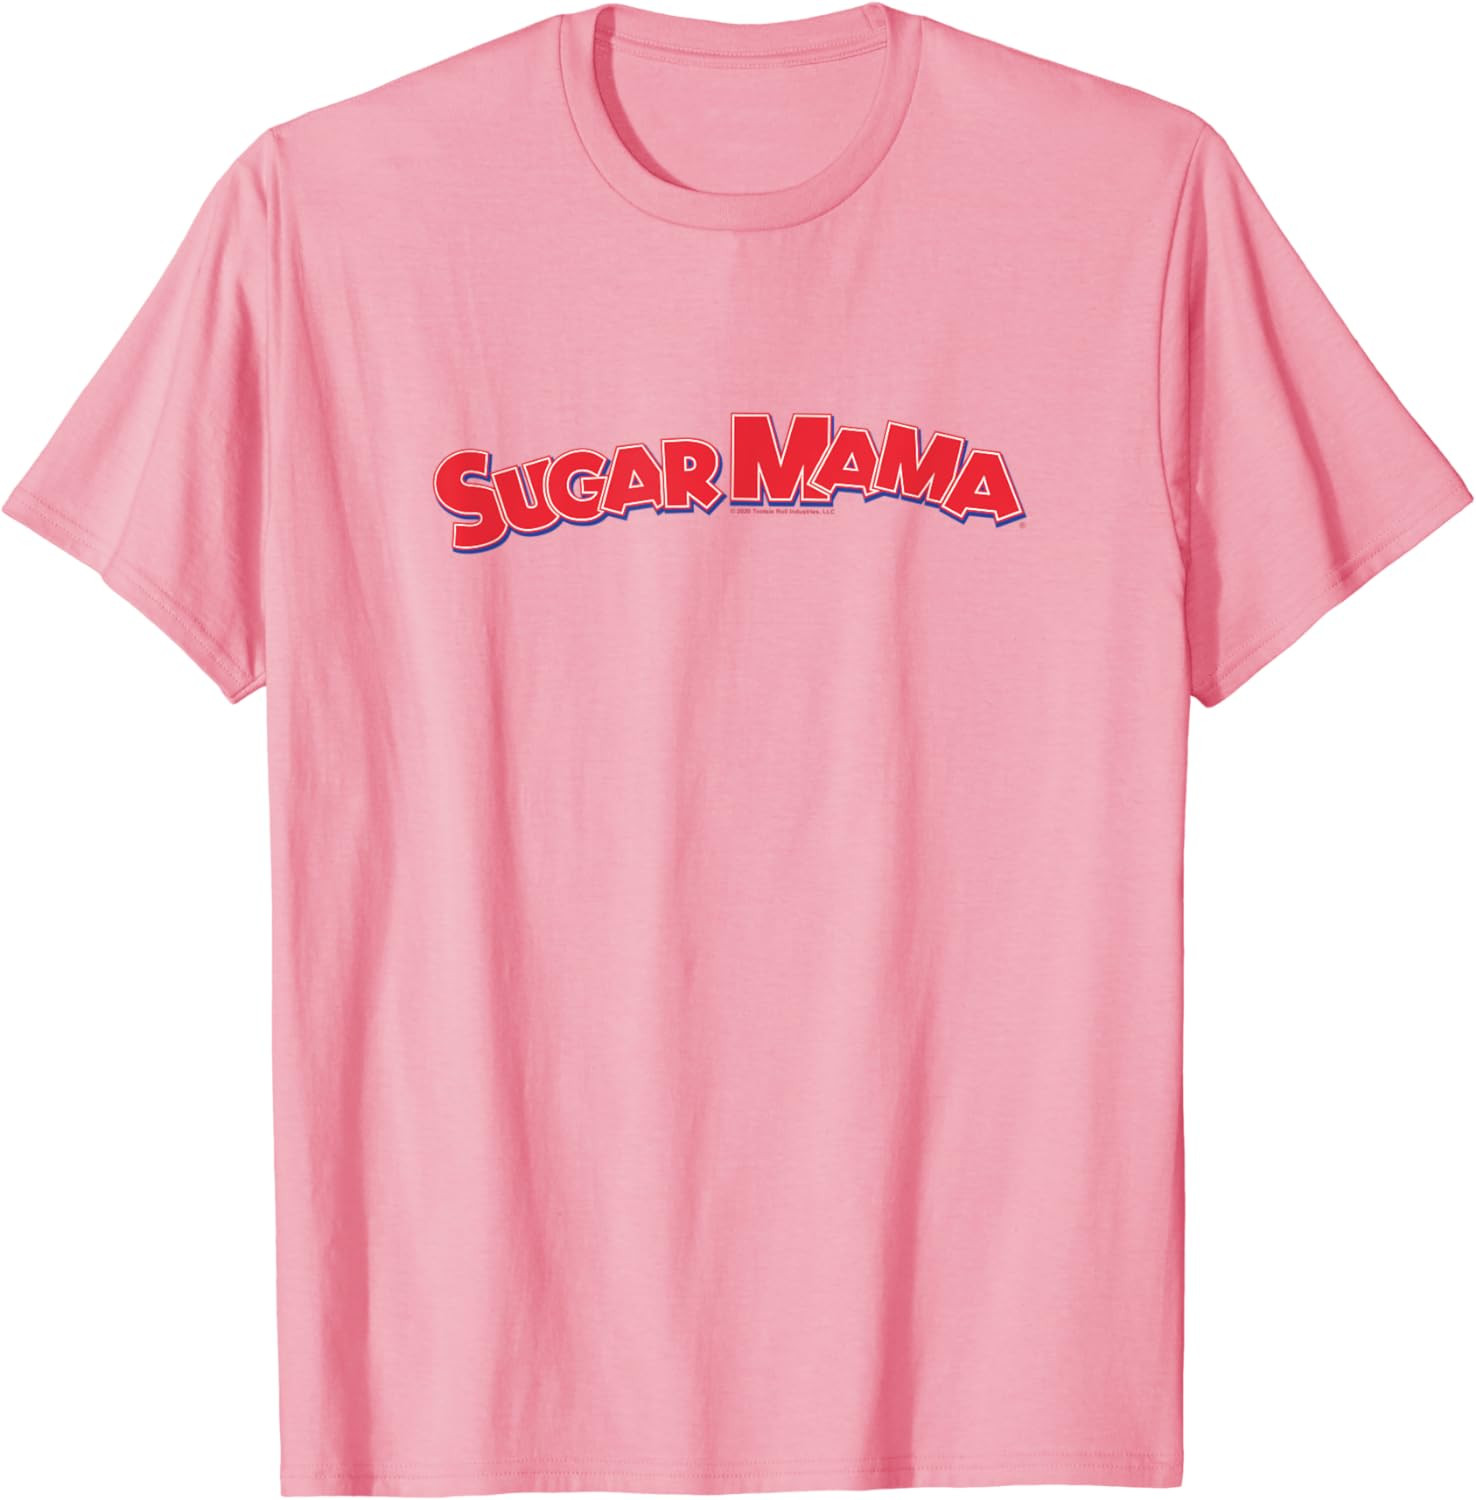 Tootsie Roll Sugar Mama T-Shirt